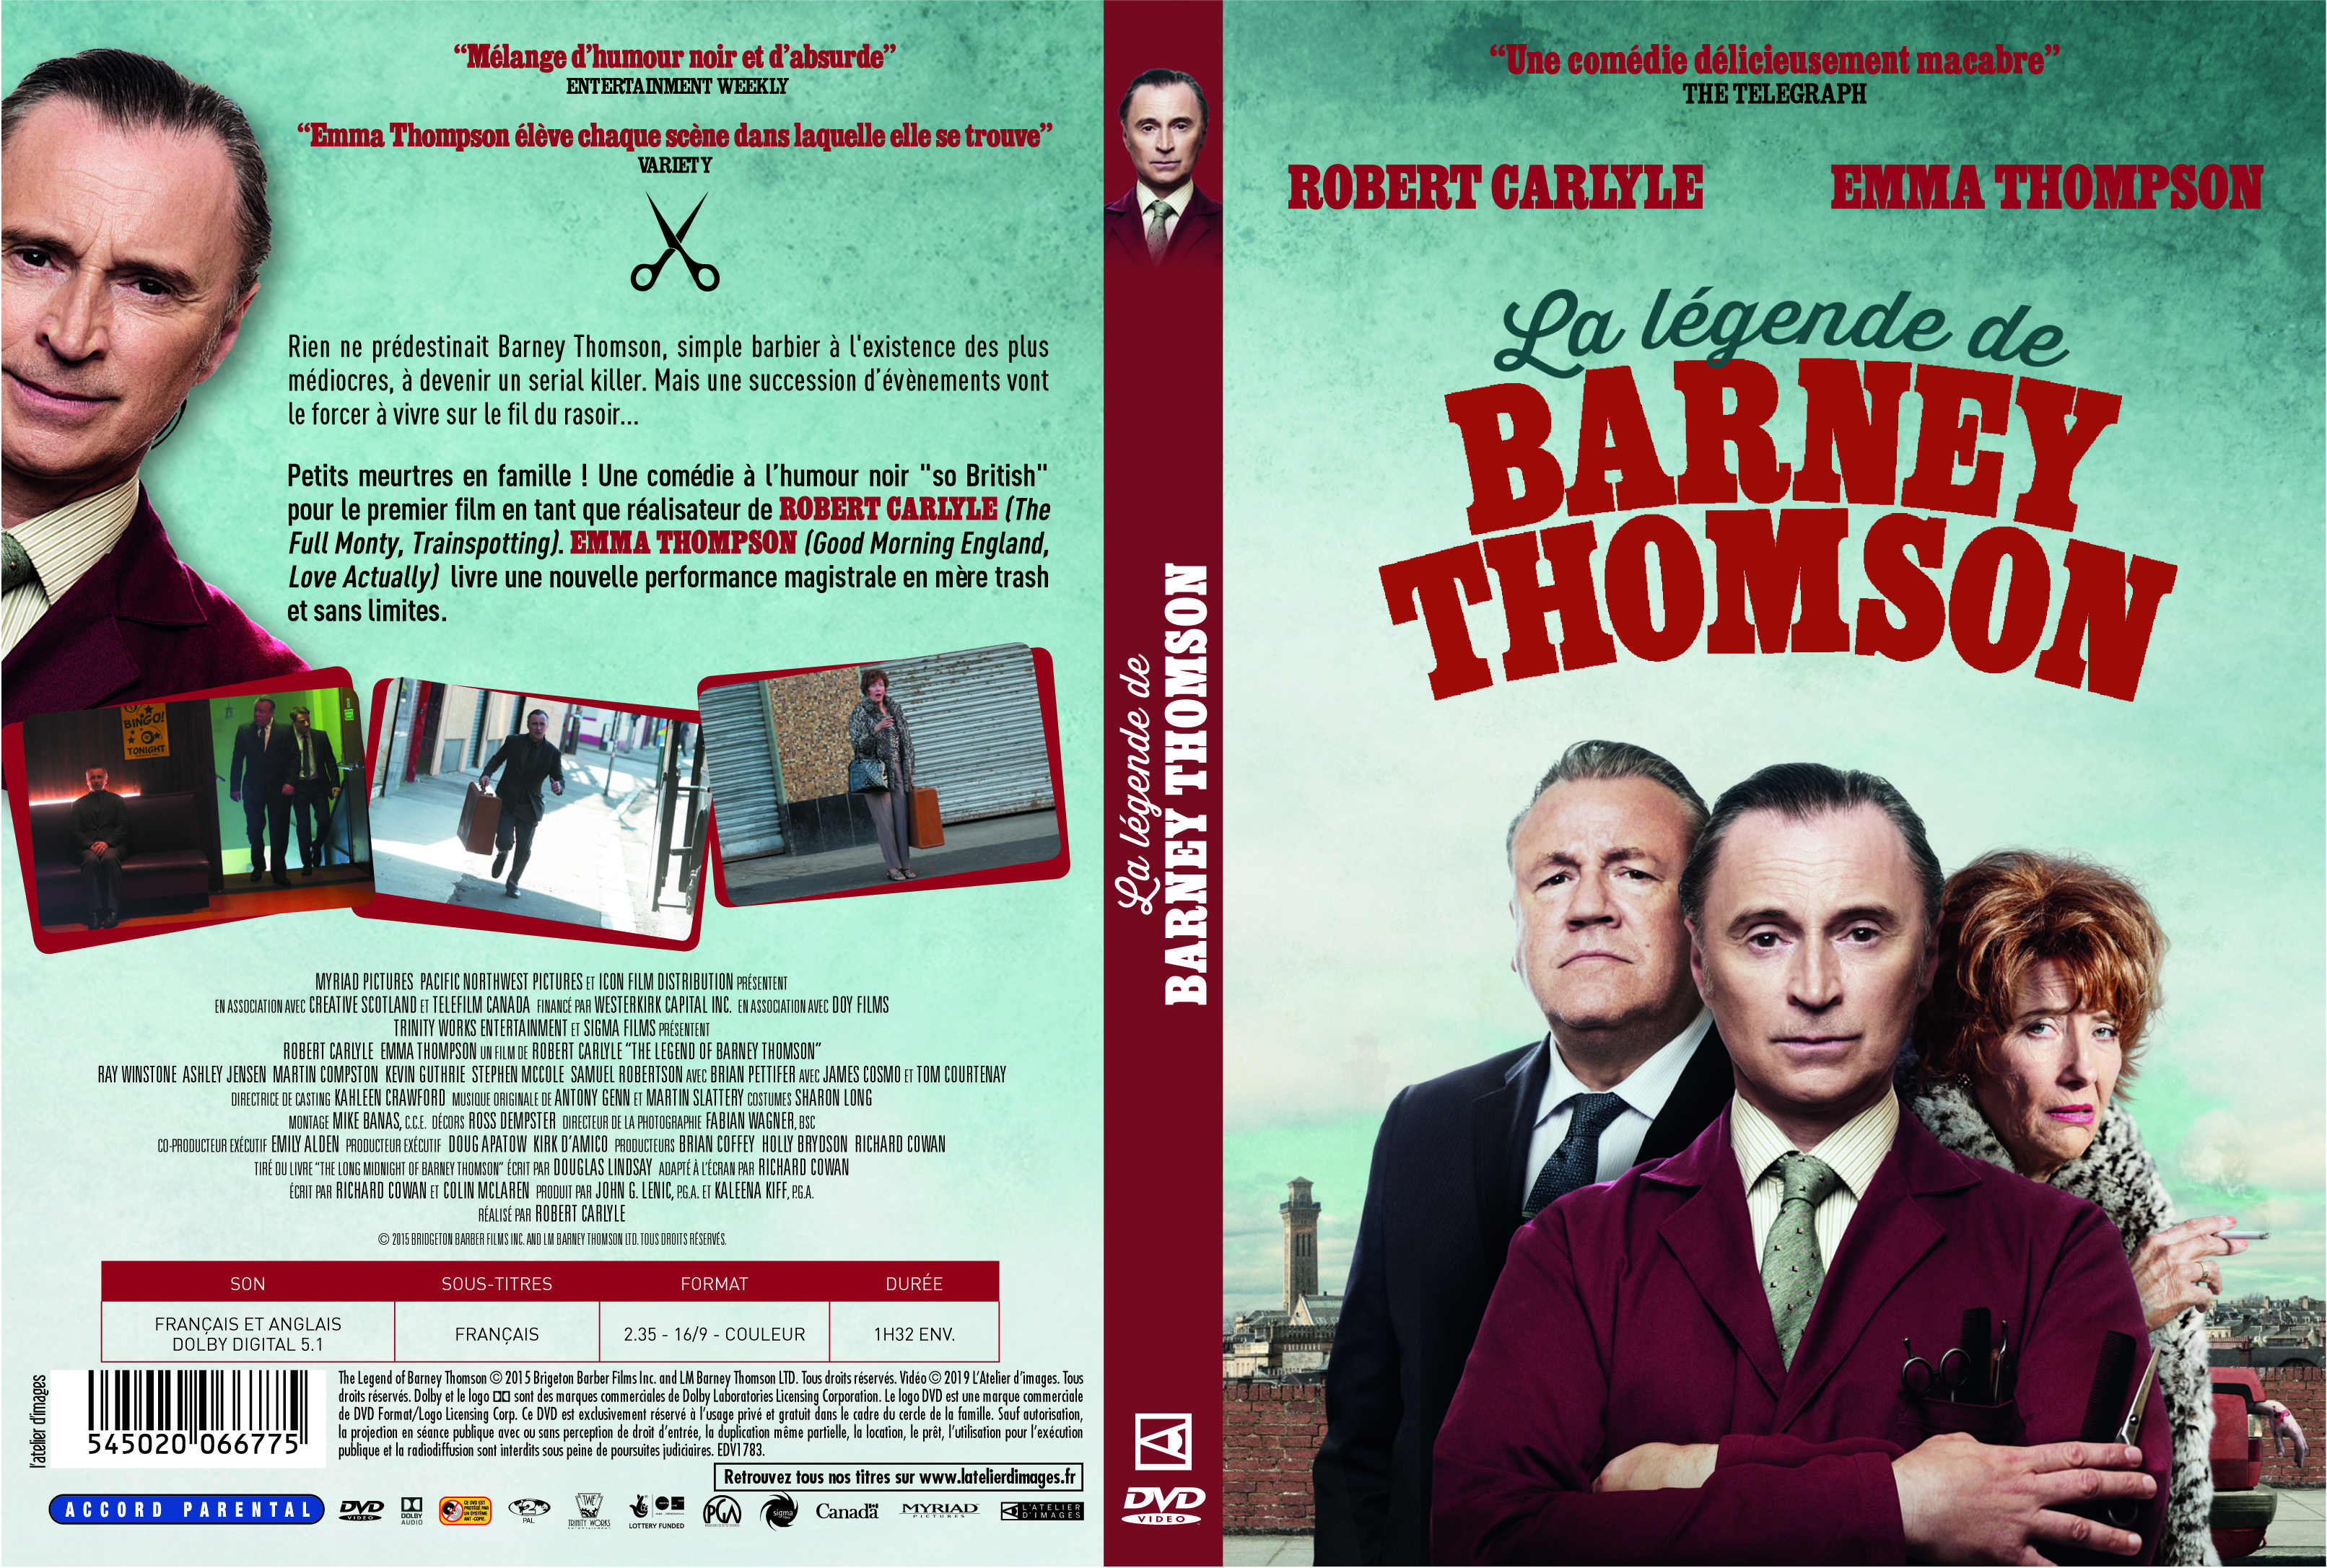 Jaquette DVD La lgende de Barney Thomson